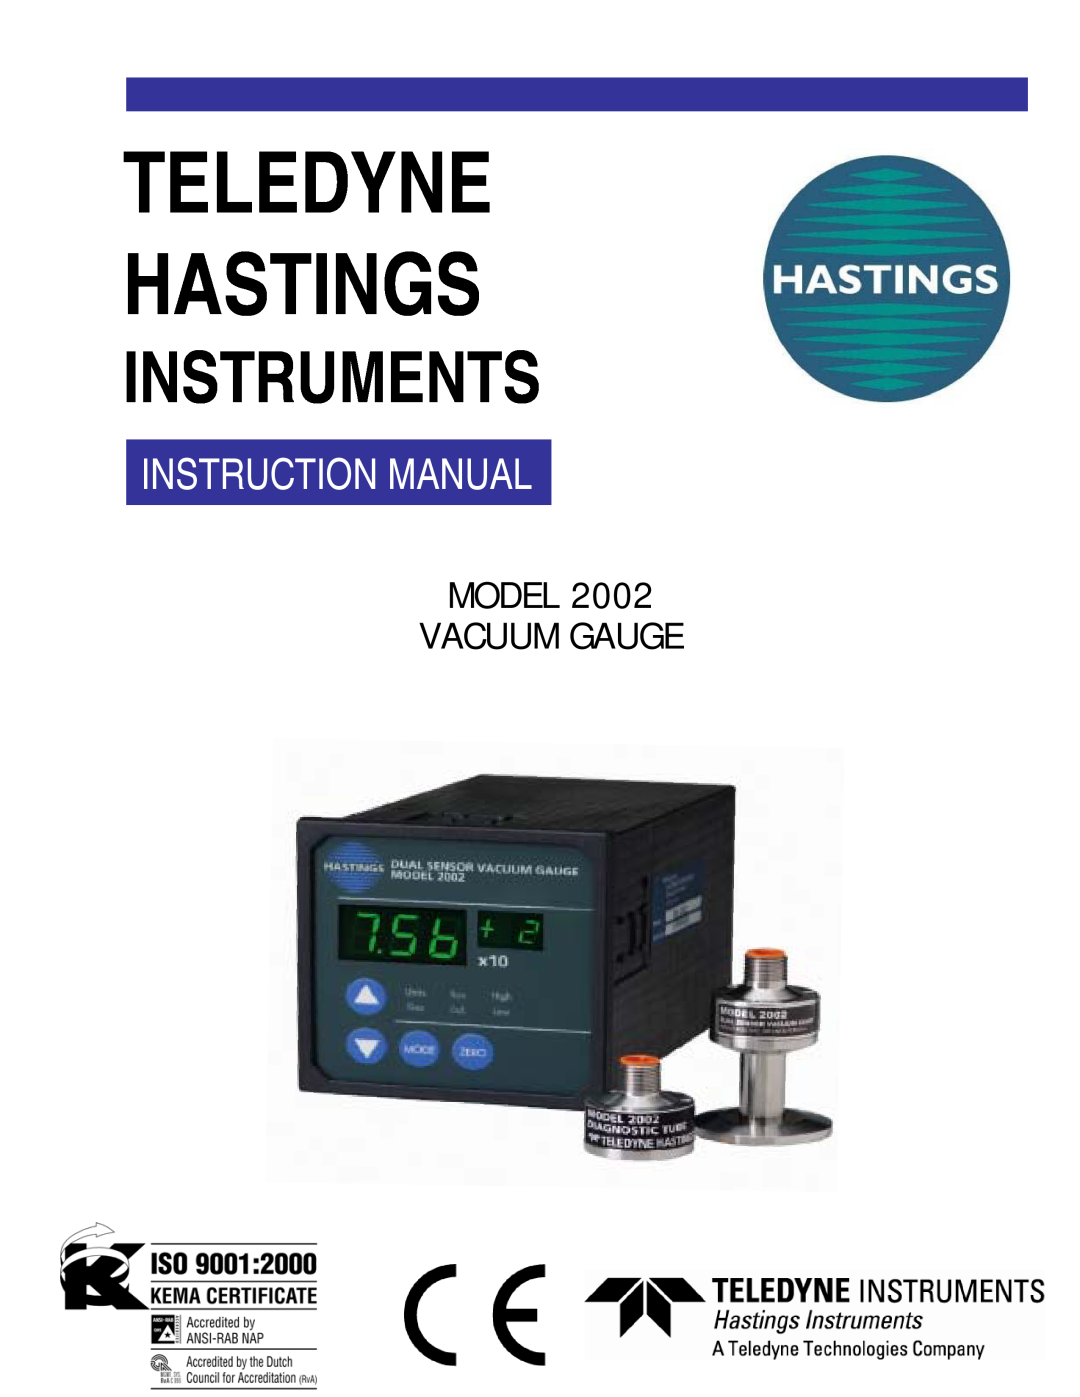 Teledyne 2002 instruction manual Teledyne Hastings, Model Vacuum Gauge 